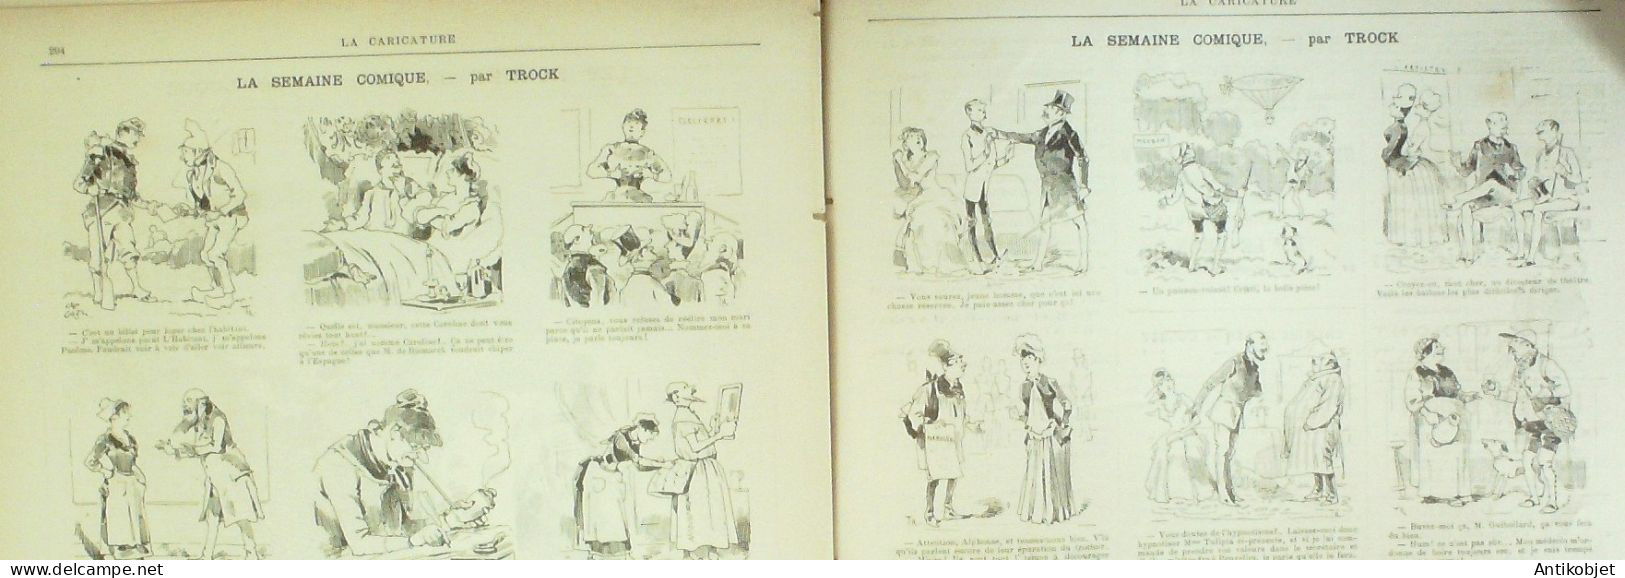 La Caricature 1885 N°298 Amour Jaloux Caran D'Ache Gino Job De Galifet Paar Luque Caran D'Ache - Revues Anciennes - Avant 1900